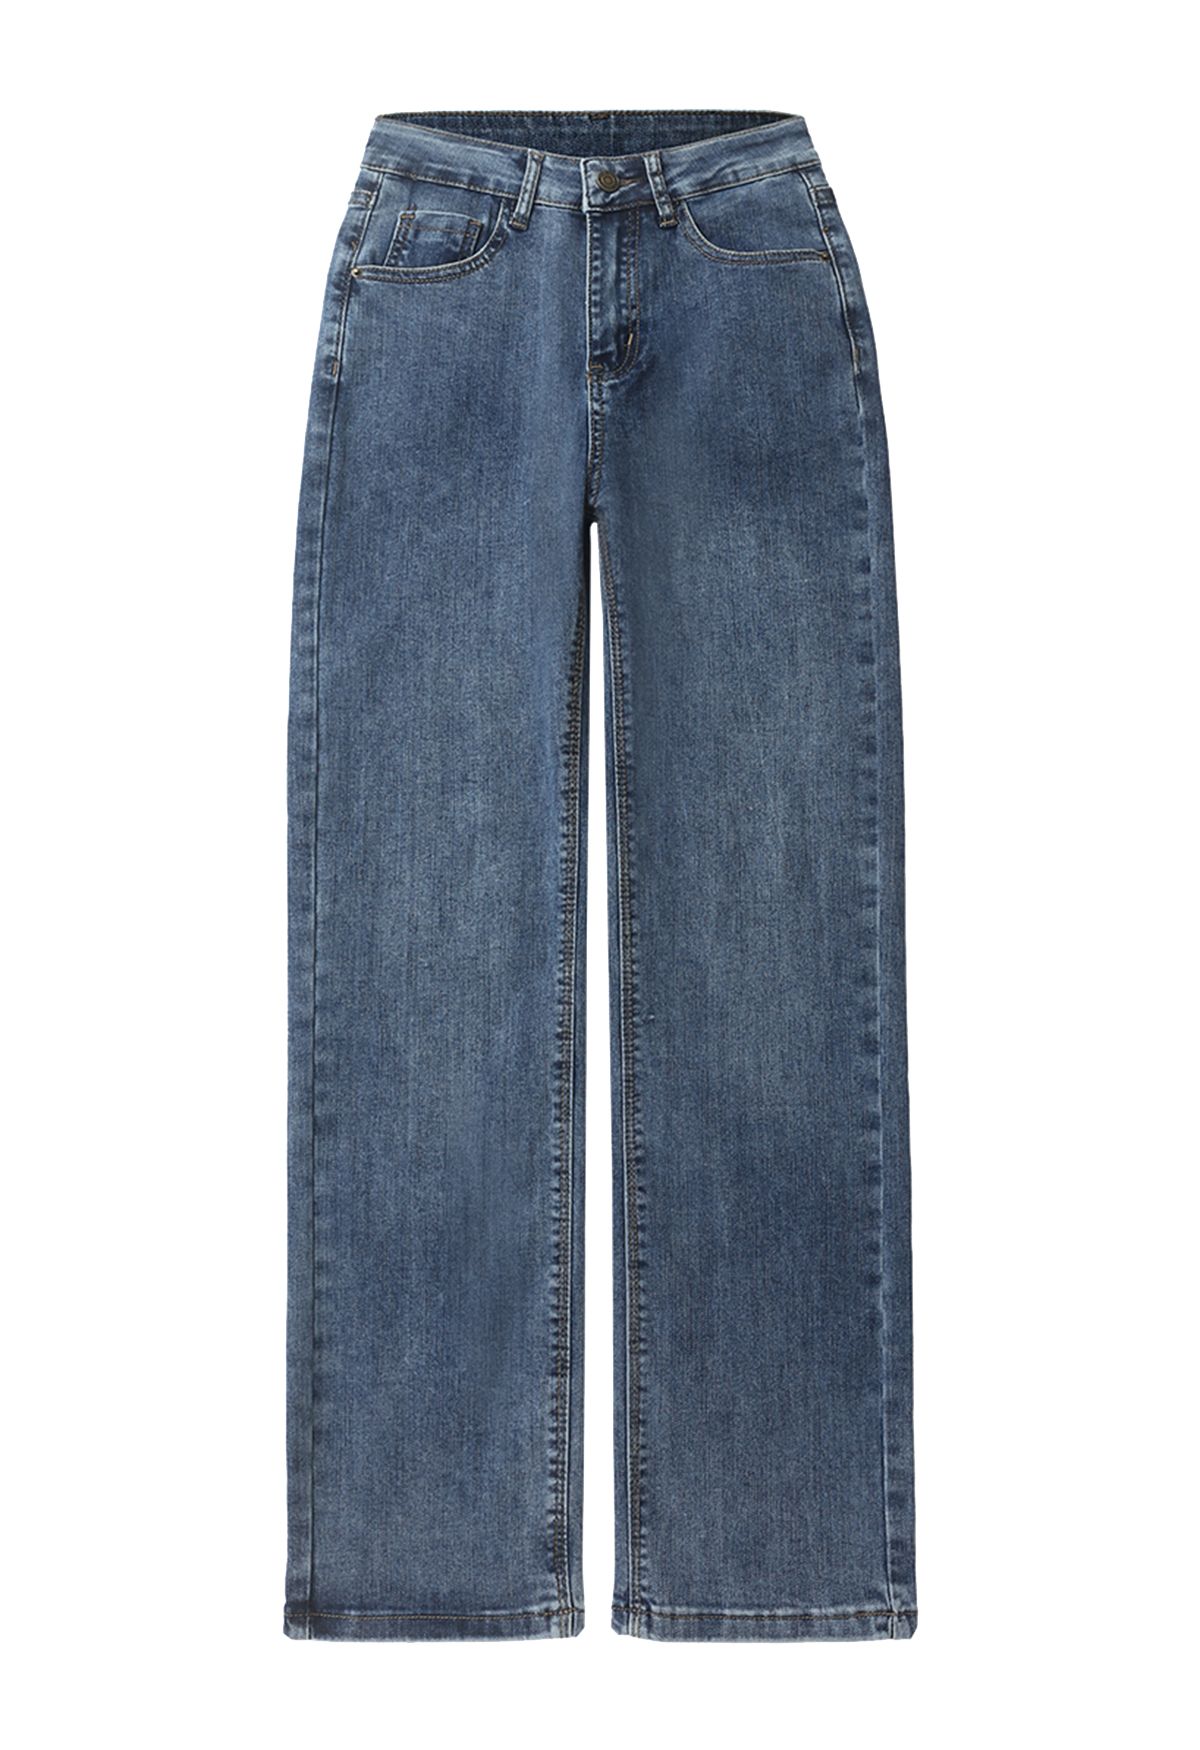 Jeans rectos suaves con bolsillos delanteros y traseros